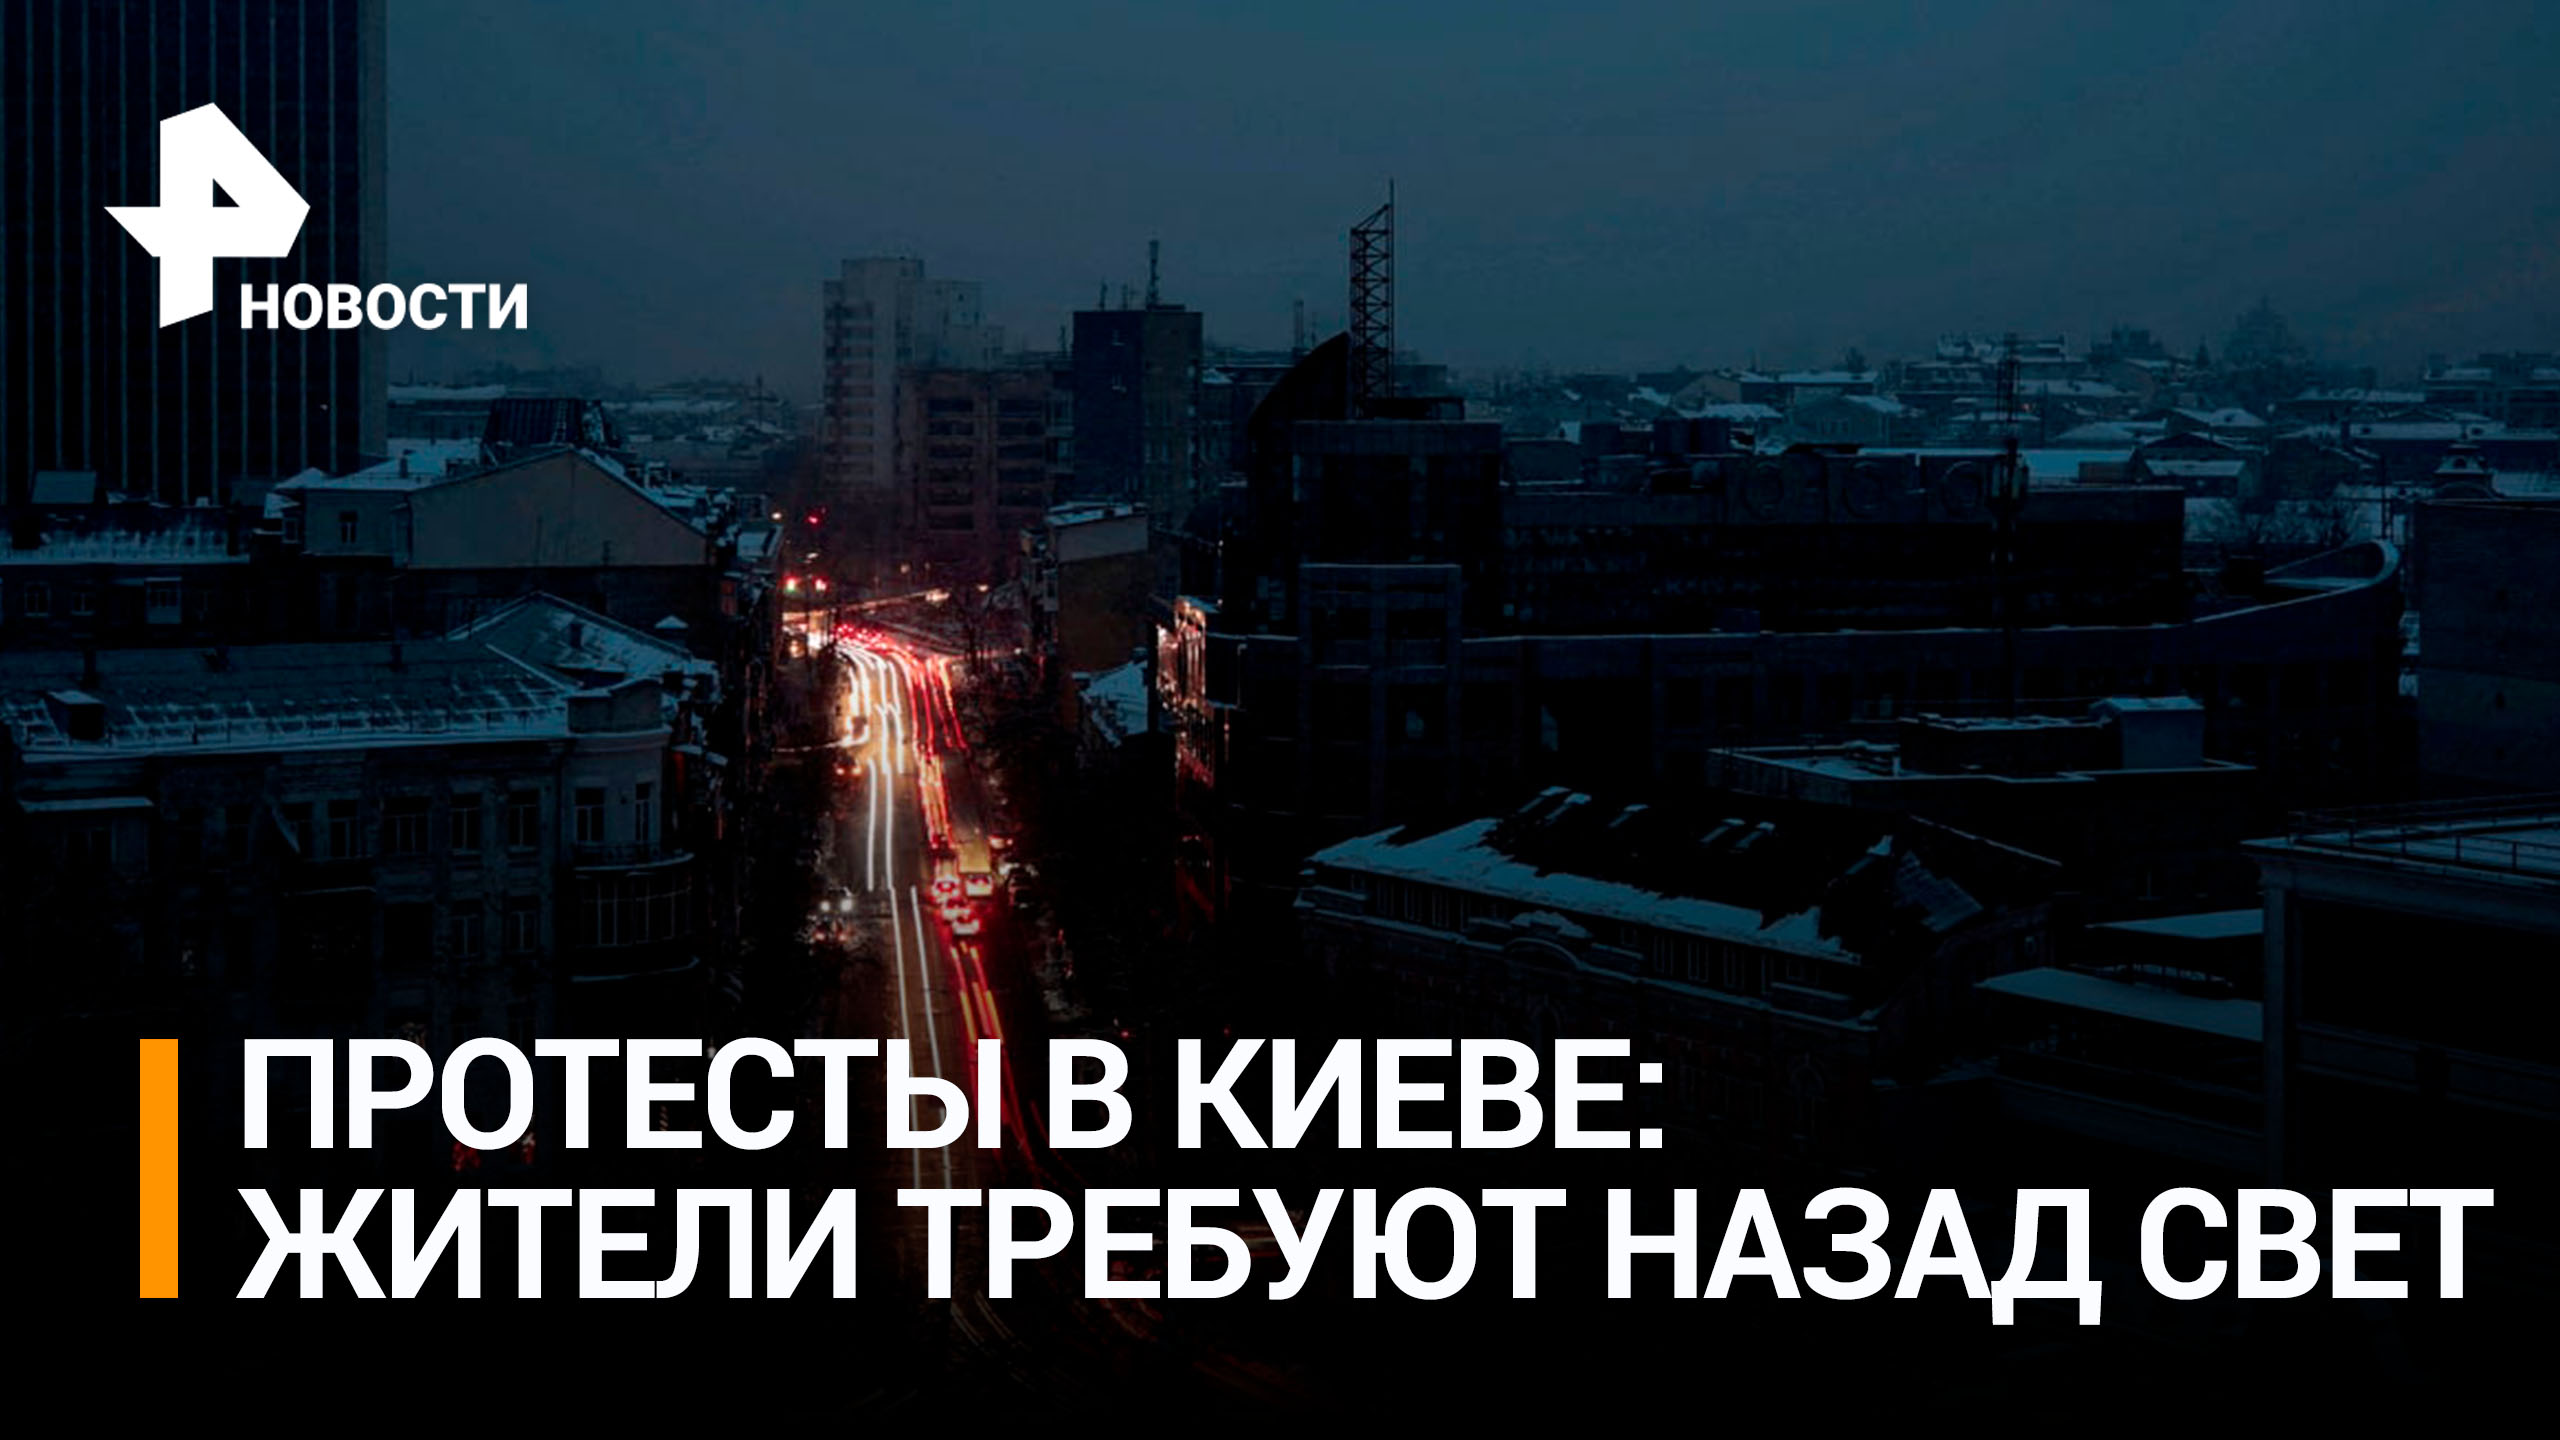 Жители Киева требуют назад свет и тепло / РЕН Новости